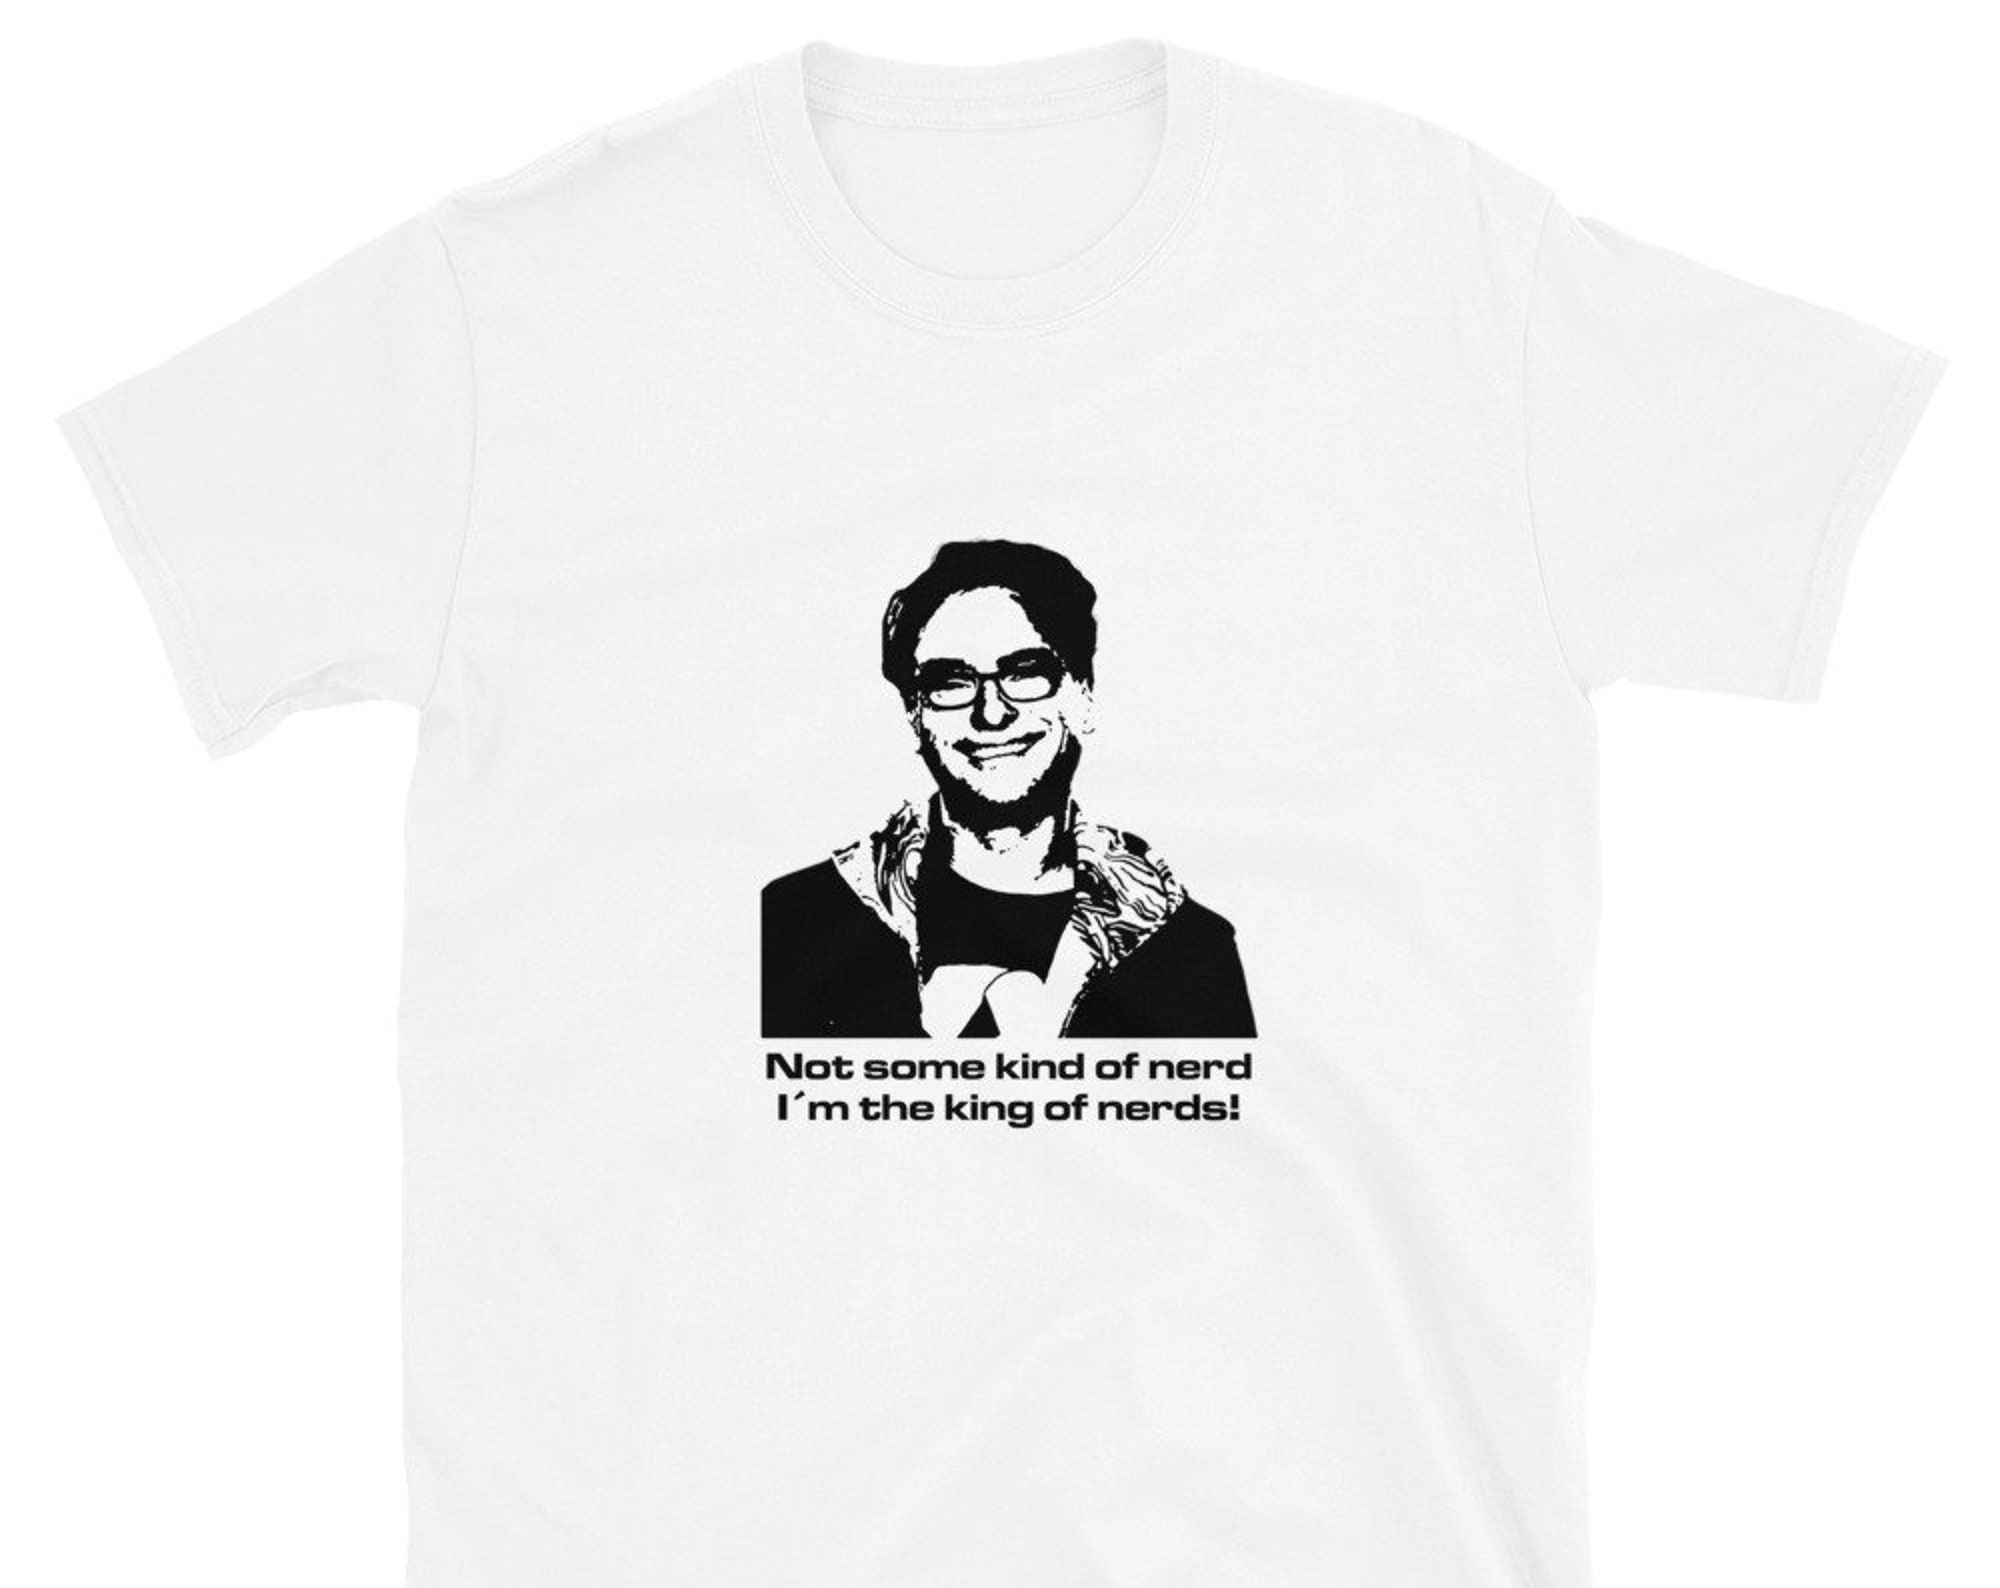 Discover Maglietta T-Shirt La Teoria Di Big Bang Uomo Donna Bambini - L'Attore Serie TV Umorismo Leonard Hofstadter